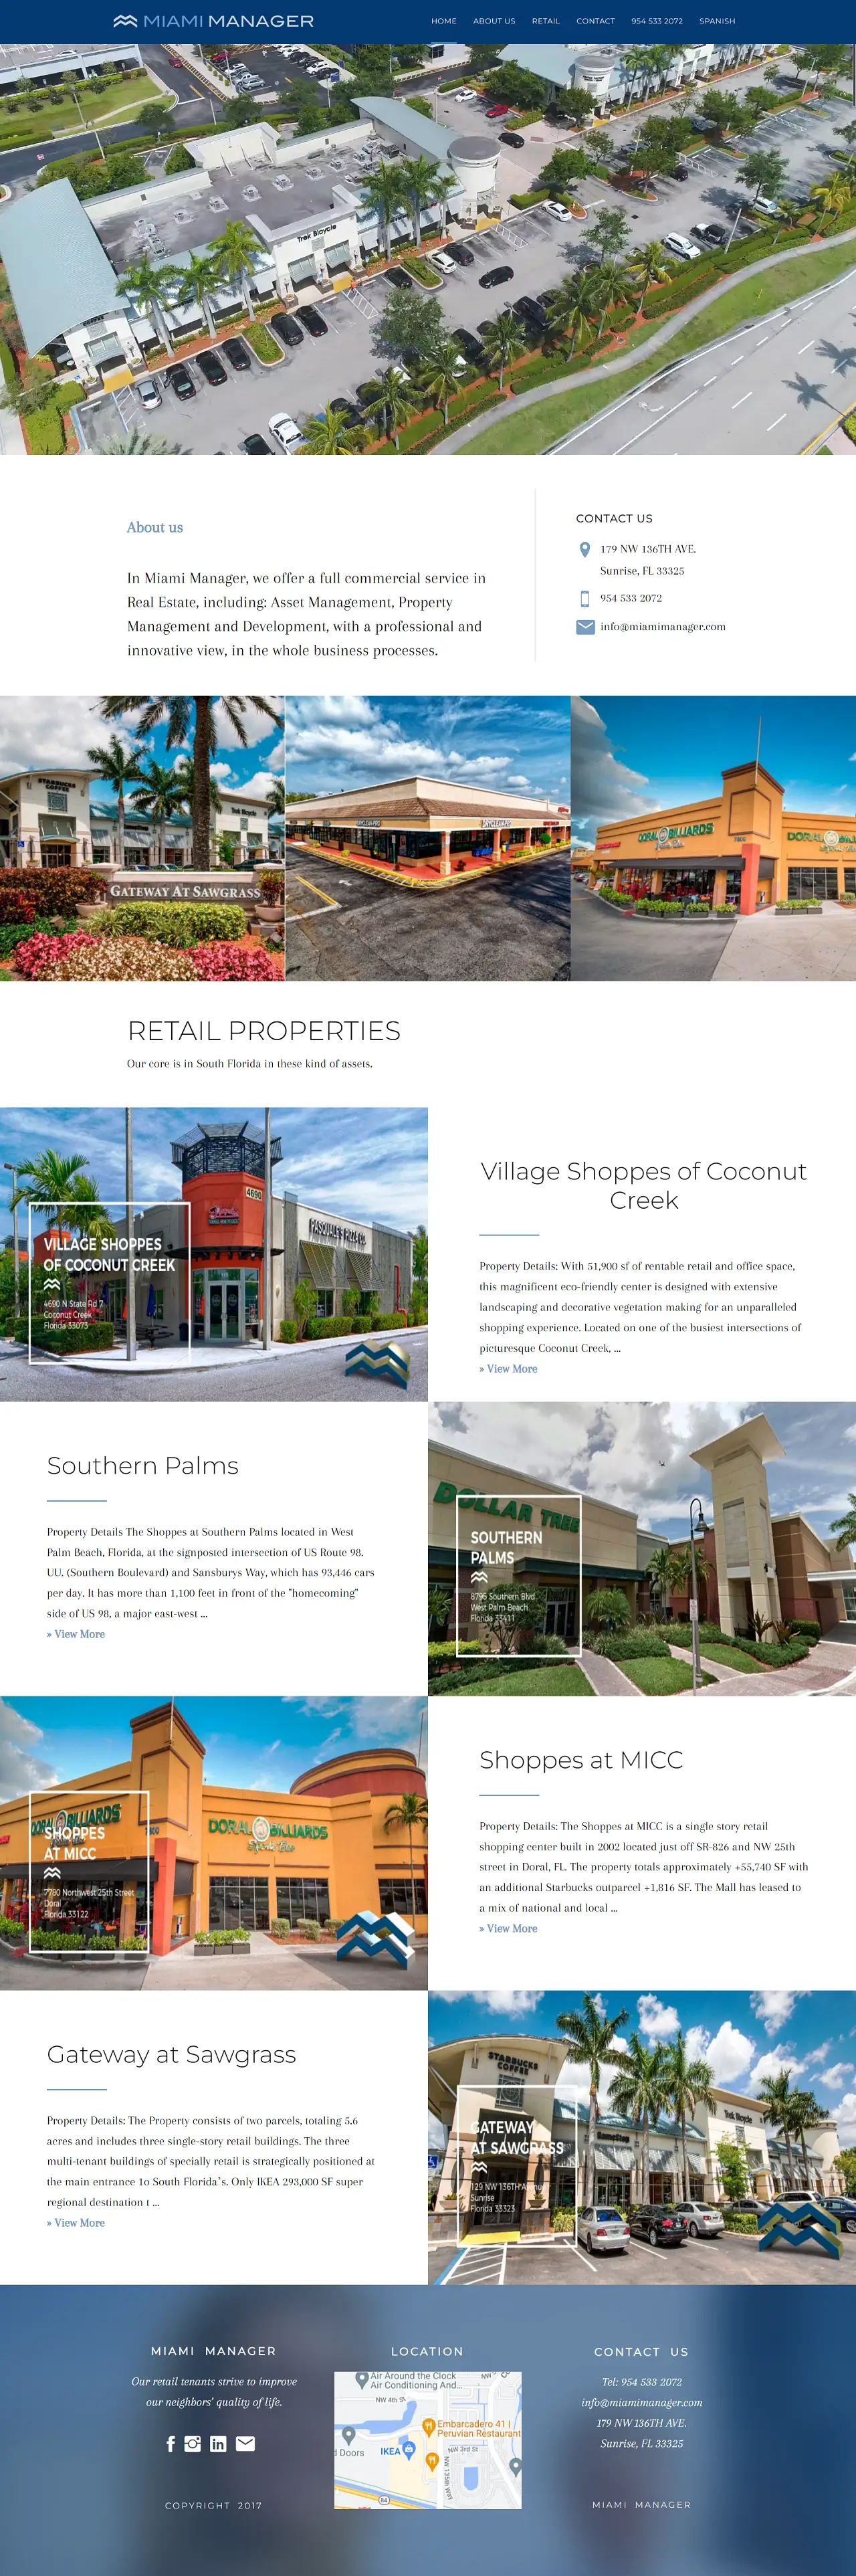 Demo de la home page de una web hecha en WordPress para una empresa de propiedades y bienes raíces en Miami